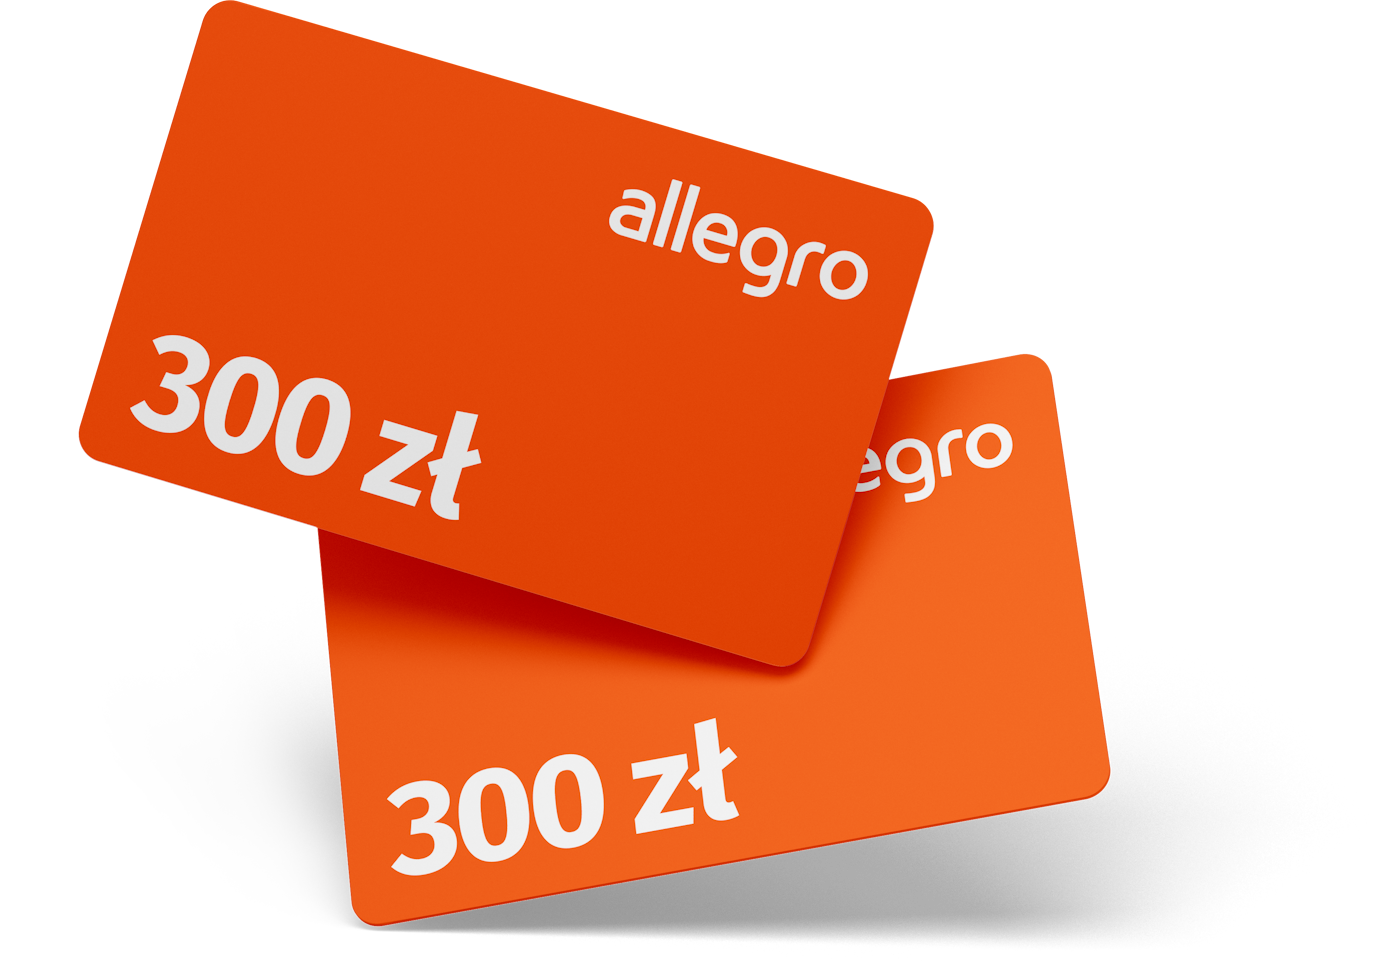 BPS Karta Allegro 300zl v1 TF 1